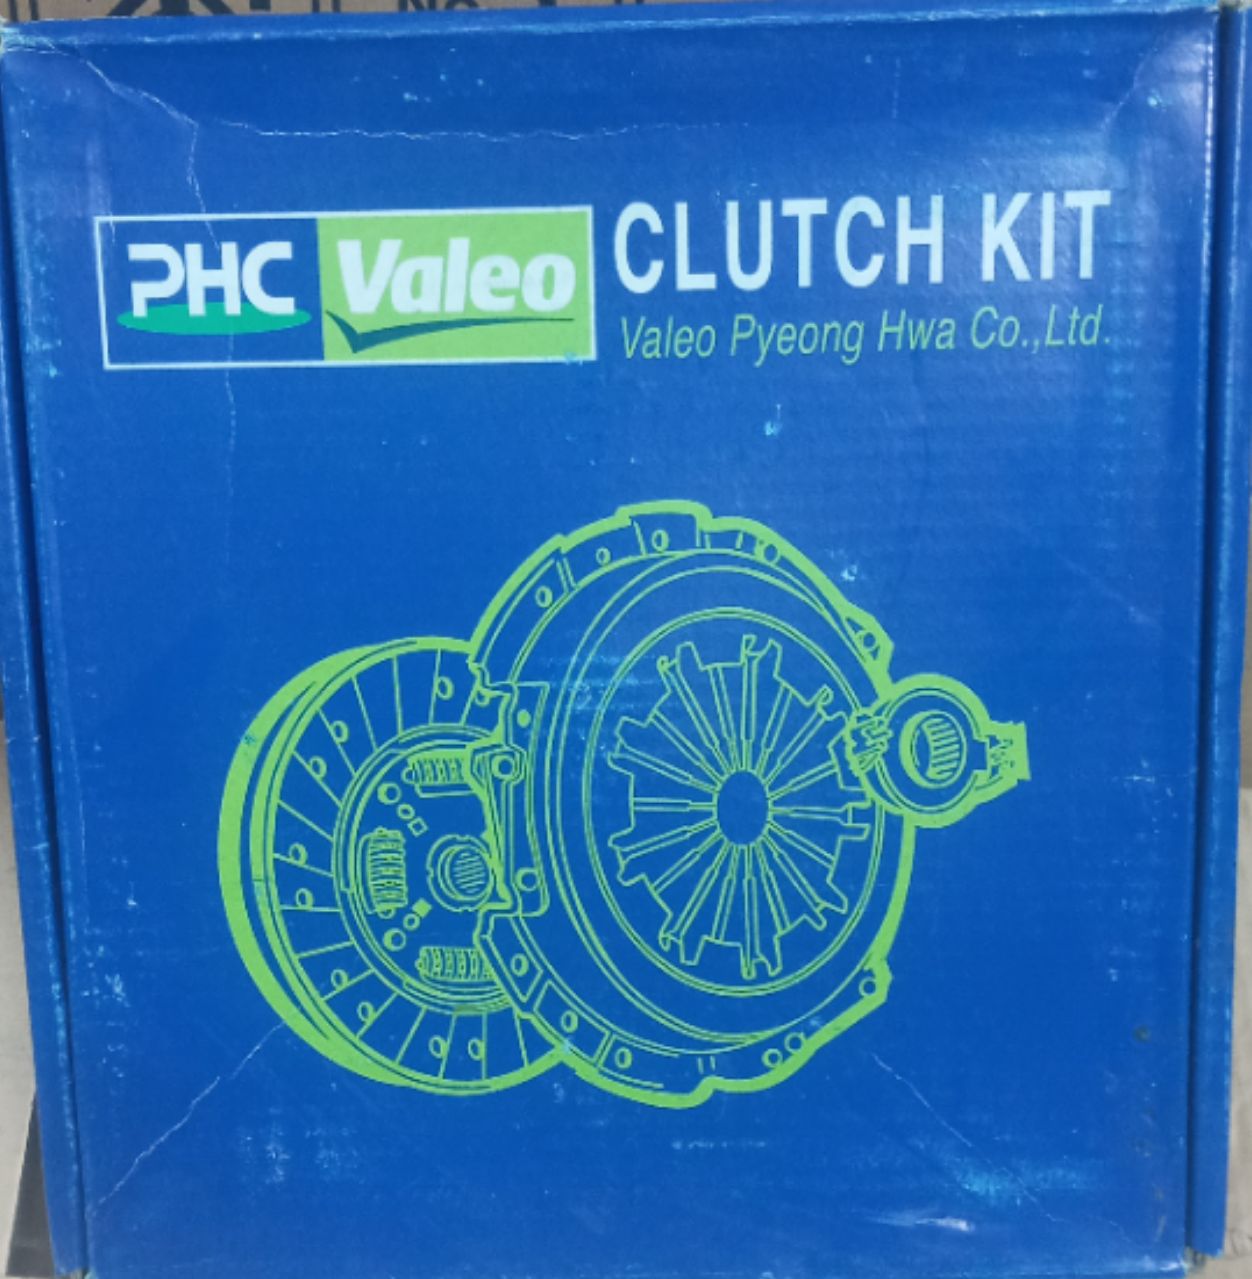 دیسک و صفحه ال ۹۰، L90 ، پی اچ س والئو PHC Valeo، جعبه آبی